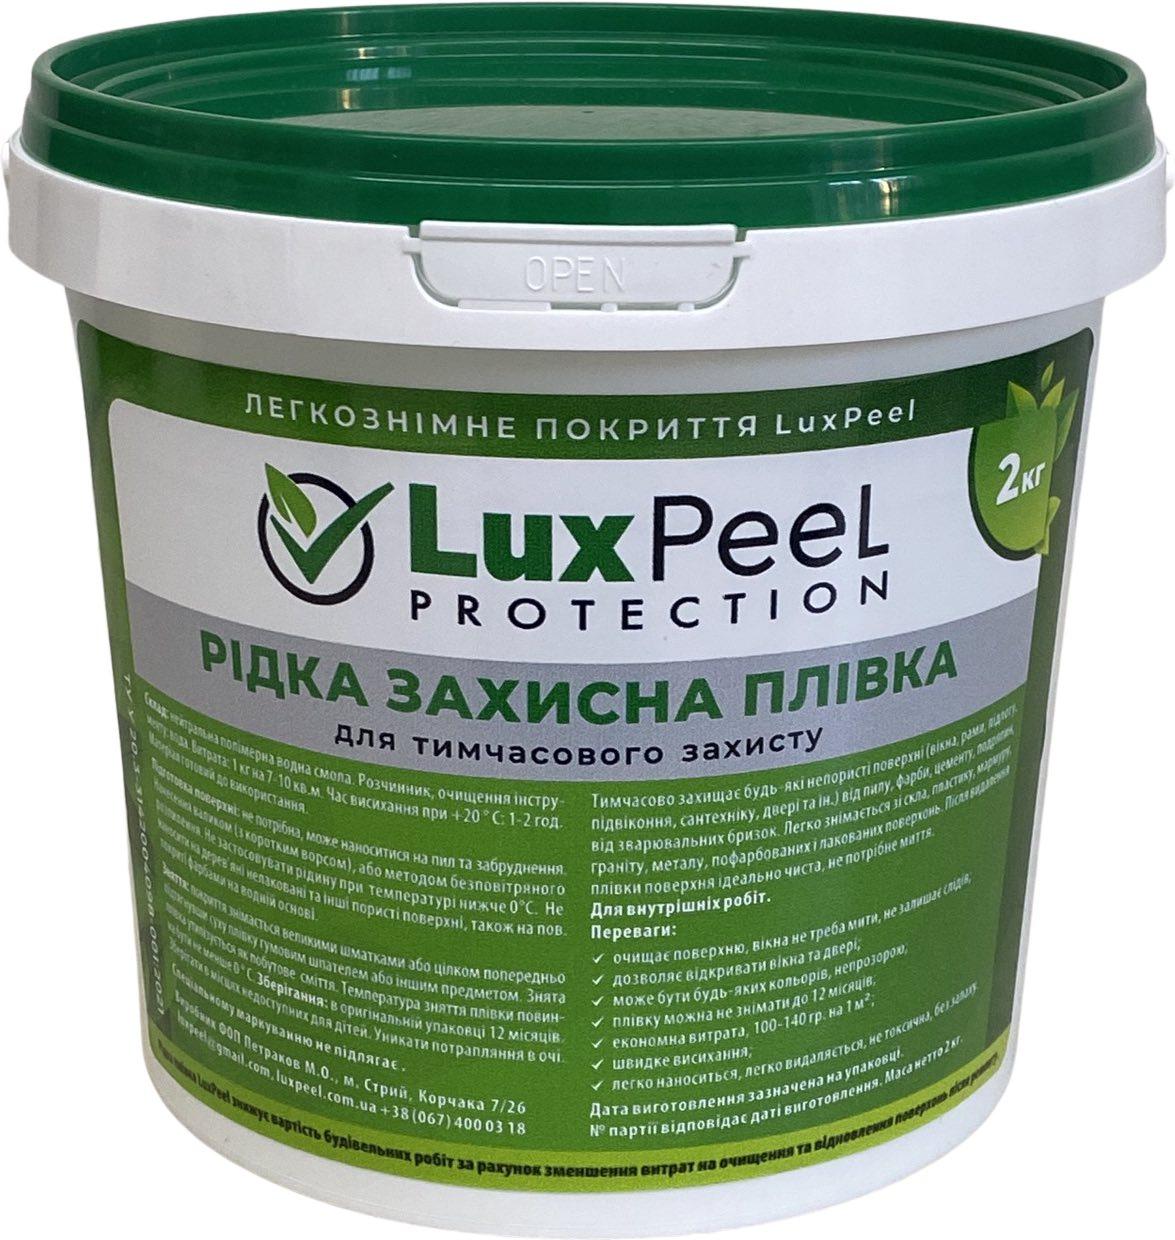 Рідка захисна плівка Luxpeel Protection для вікон та інших поверхонь, універсальна (2 кг)